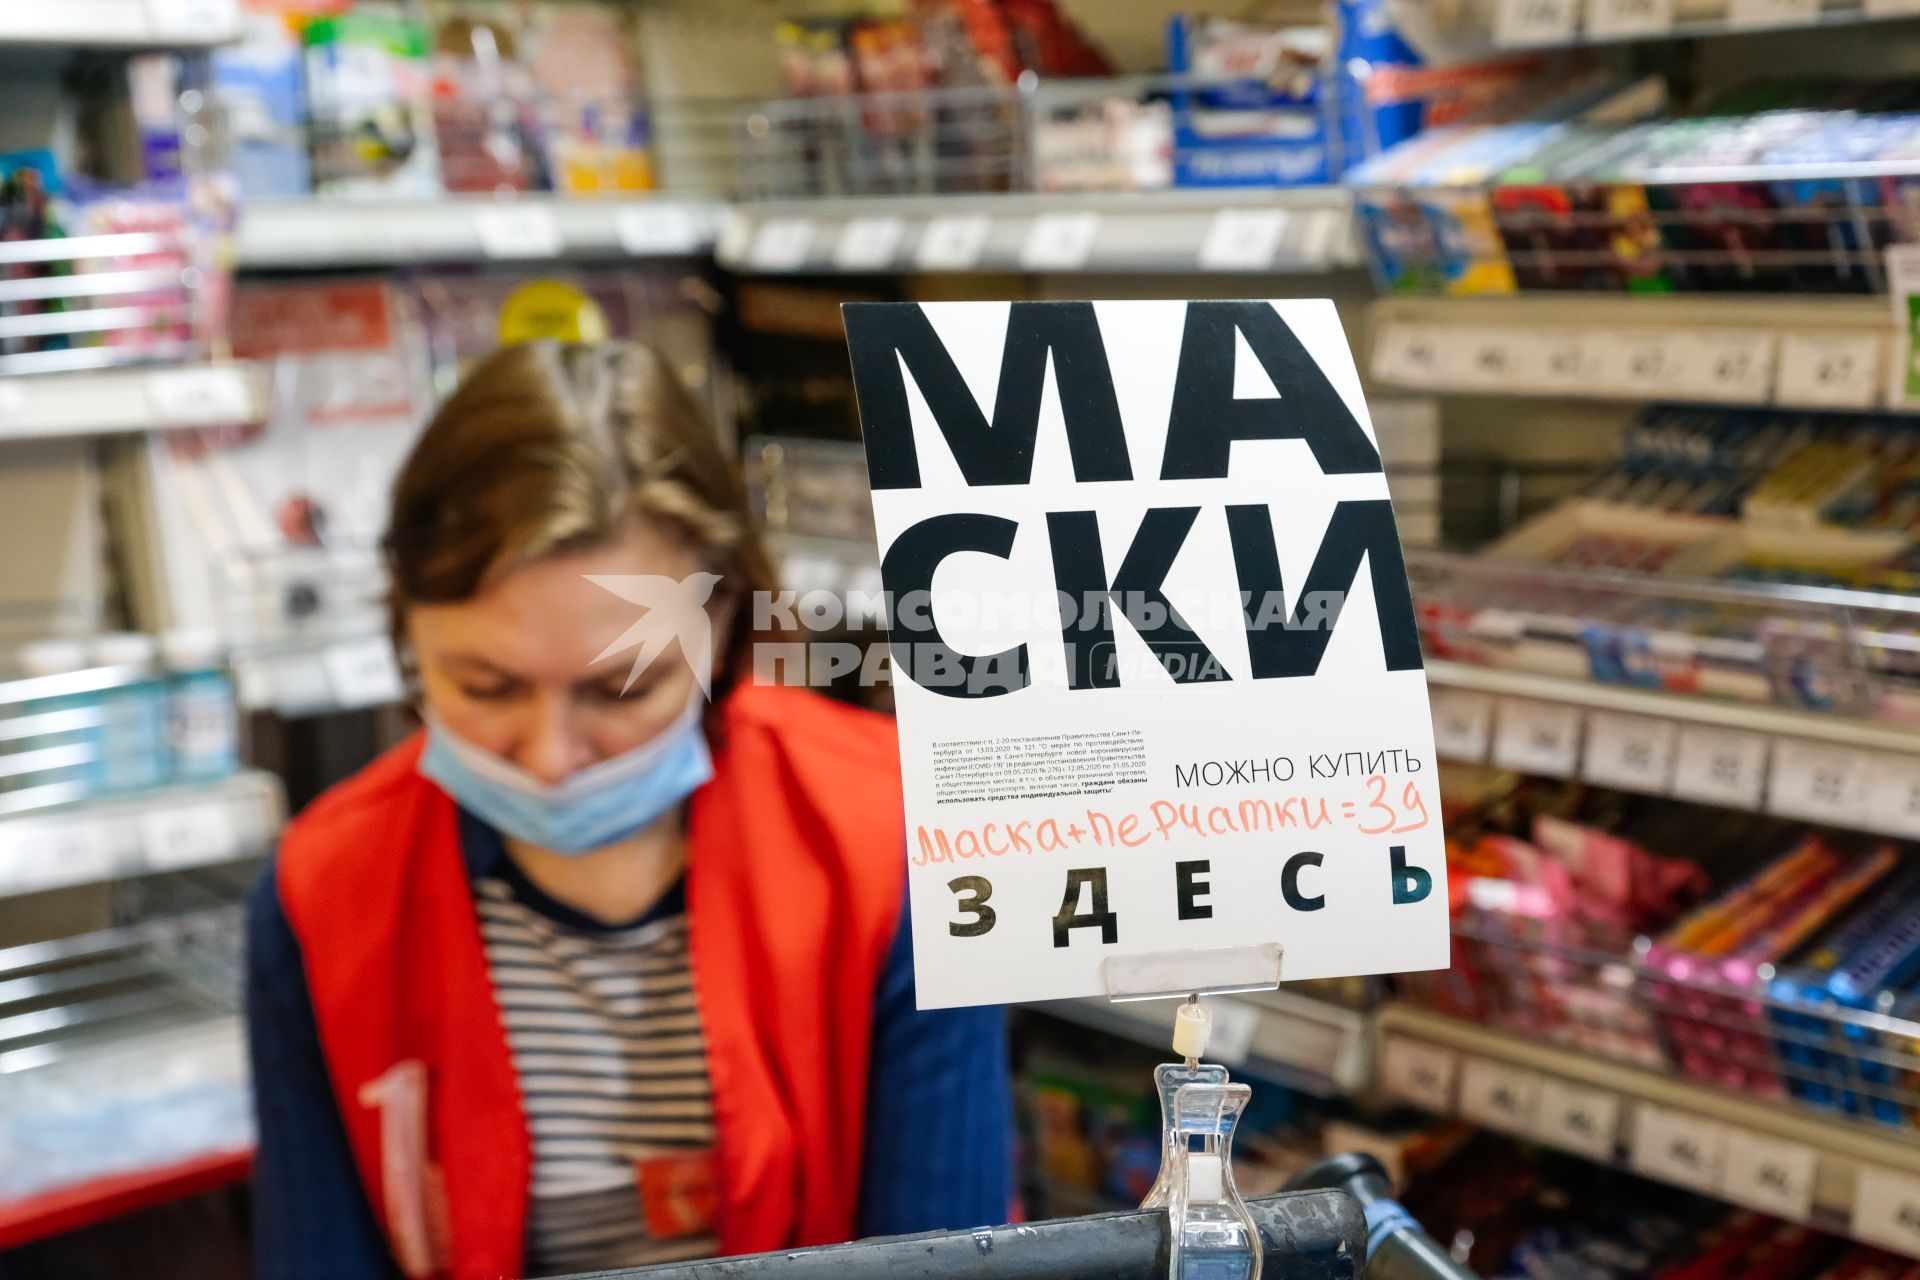 Санкт-Петербург. Продажа масок в магазине.